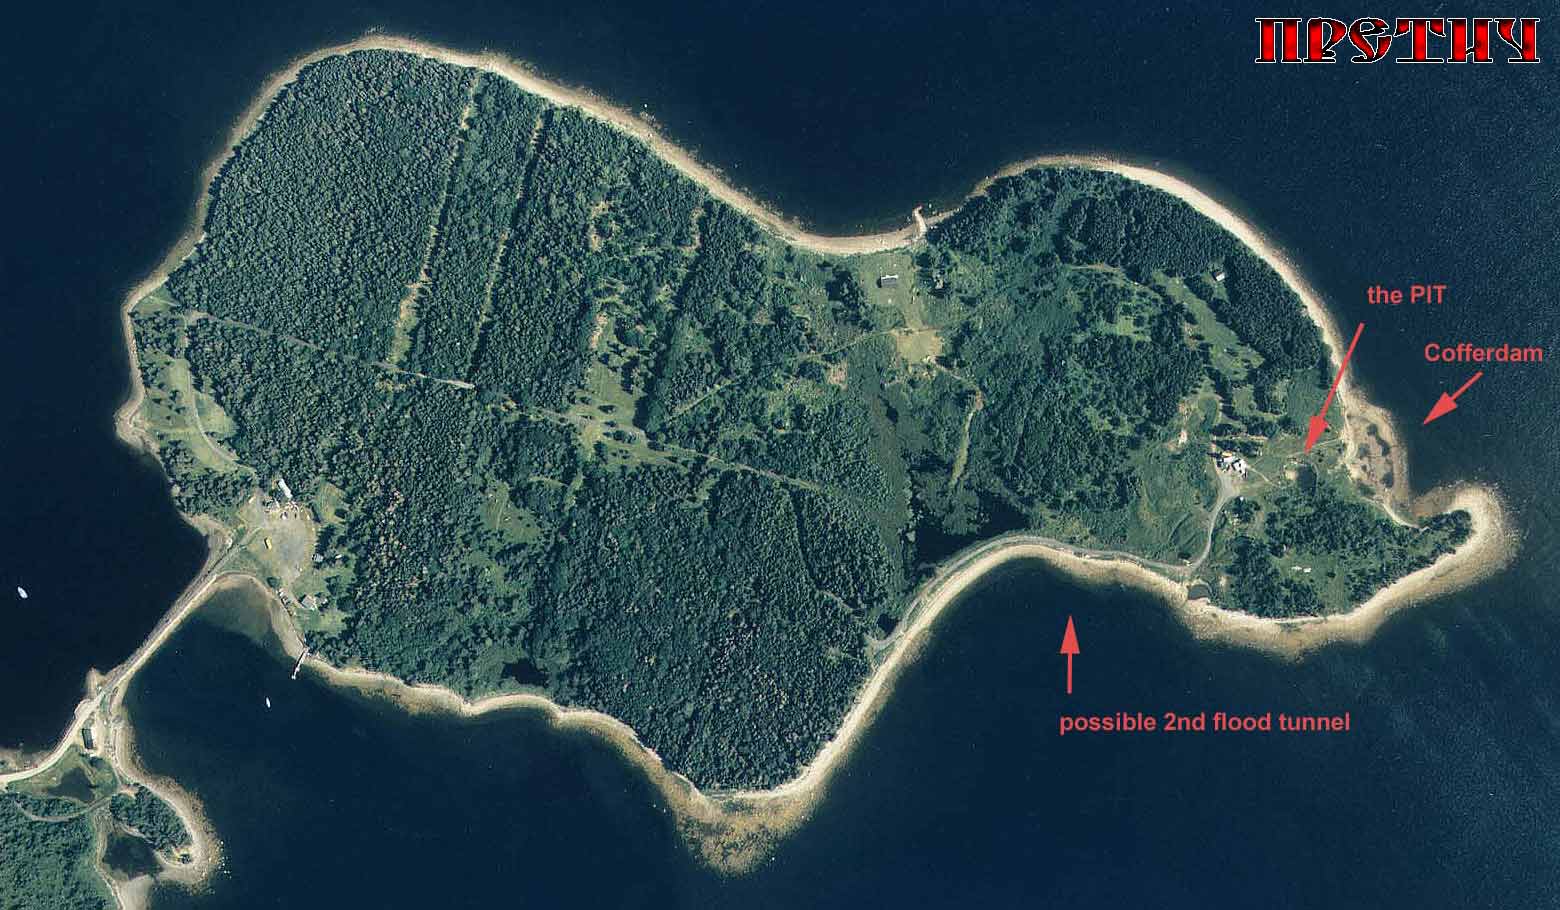 остров Оук - снимок из космоса